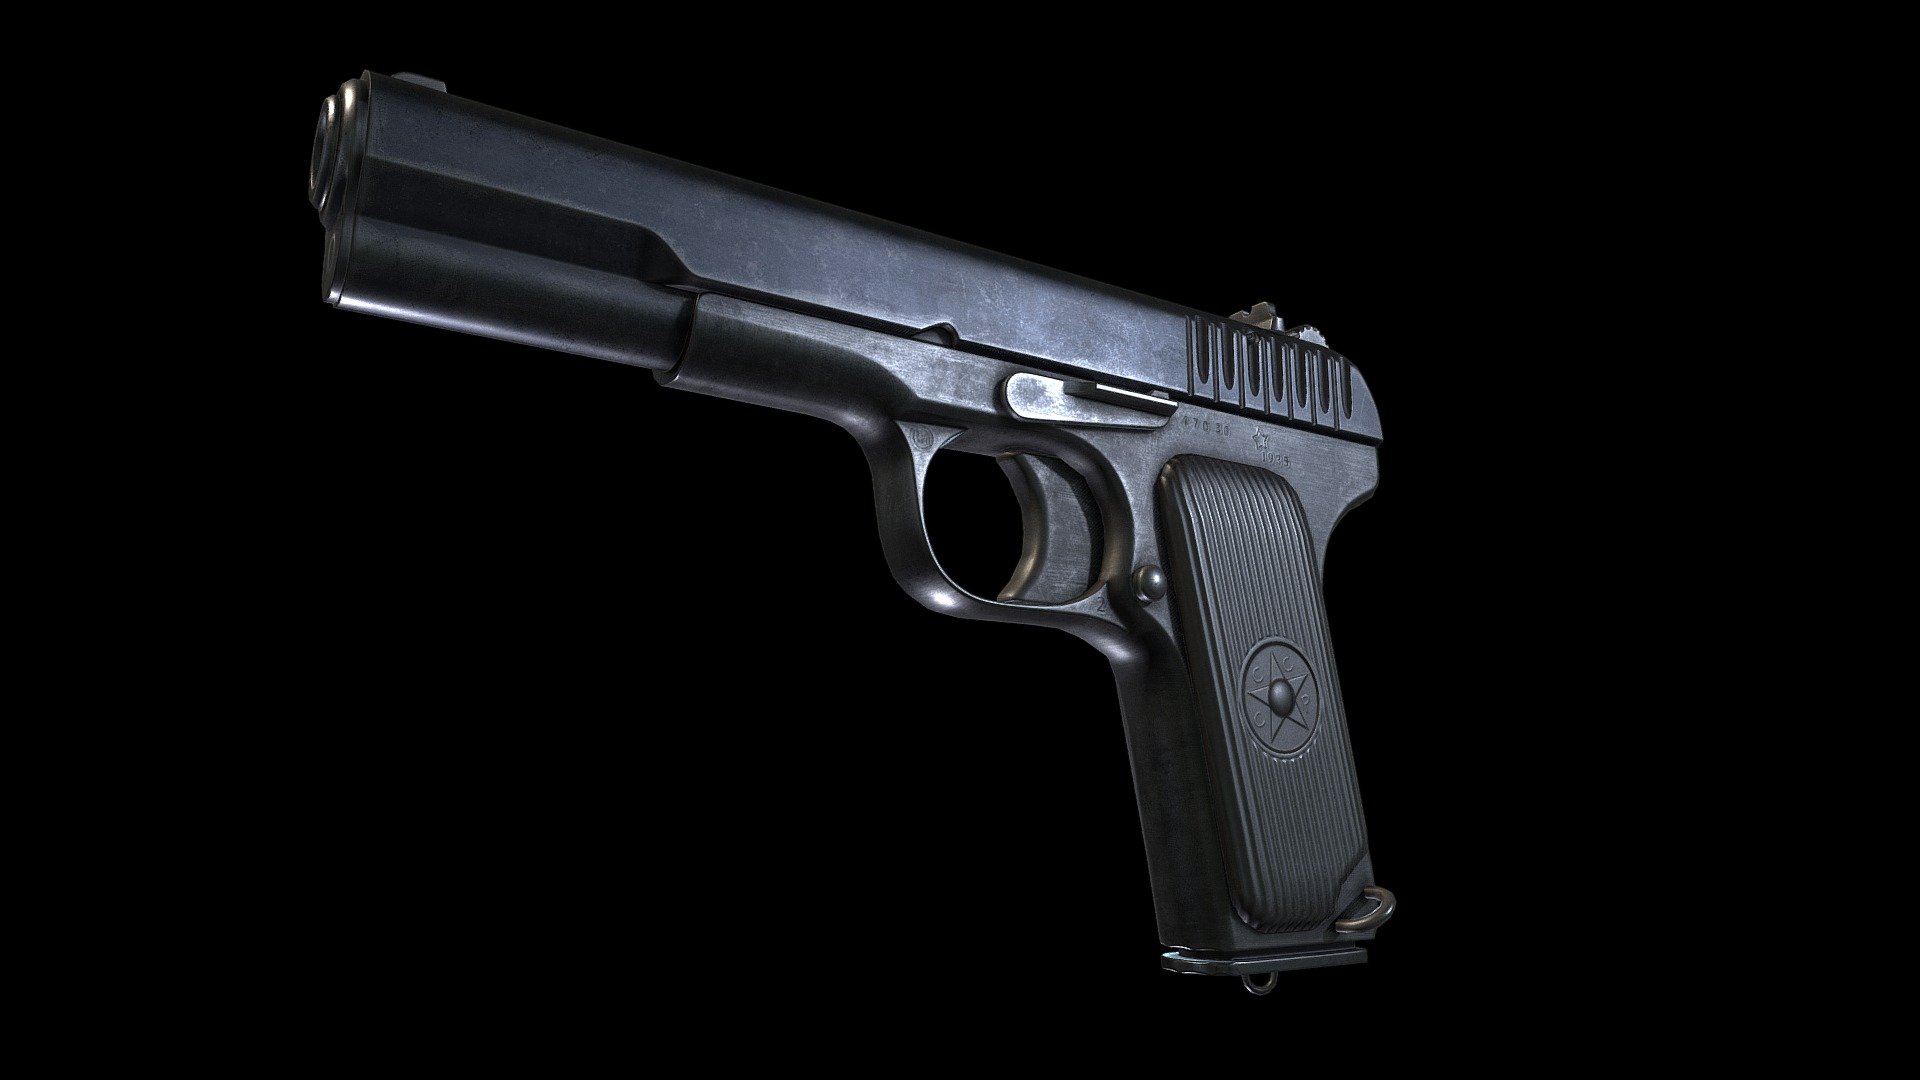 Game ready marked TT-33 pistol

High res renders: https://www.artstation.com/artwork/3qznJg

.fbx

5,581 tris

1 UV in 4096x4096 - Tokarev TT-33 - Buy Royalty Free 3D model by Minde (@mufake) 3d model